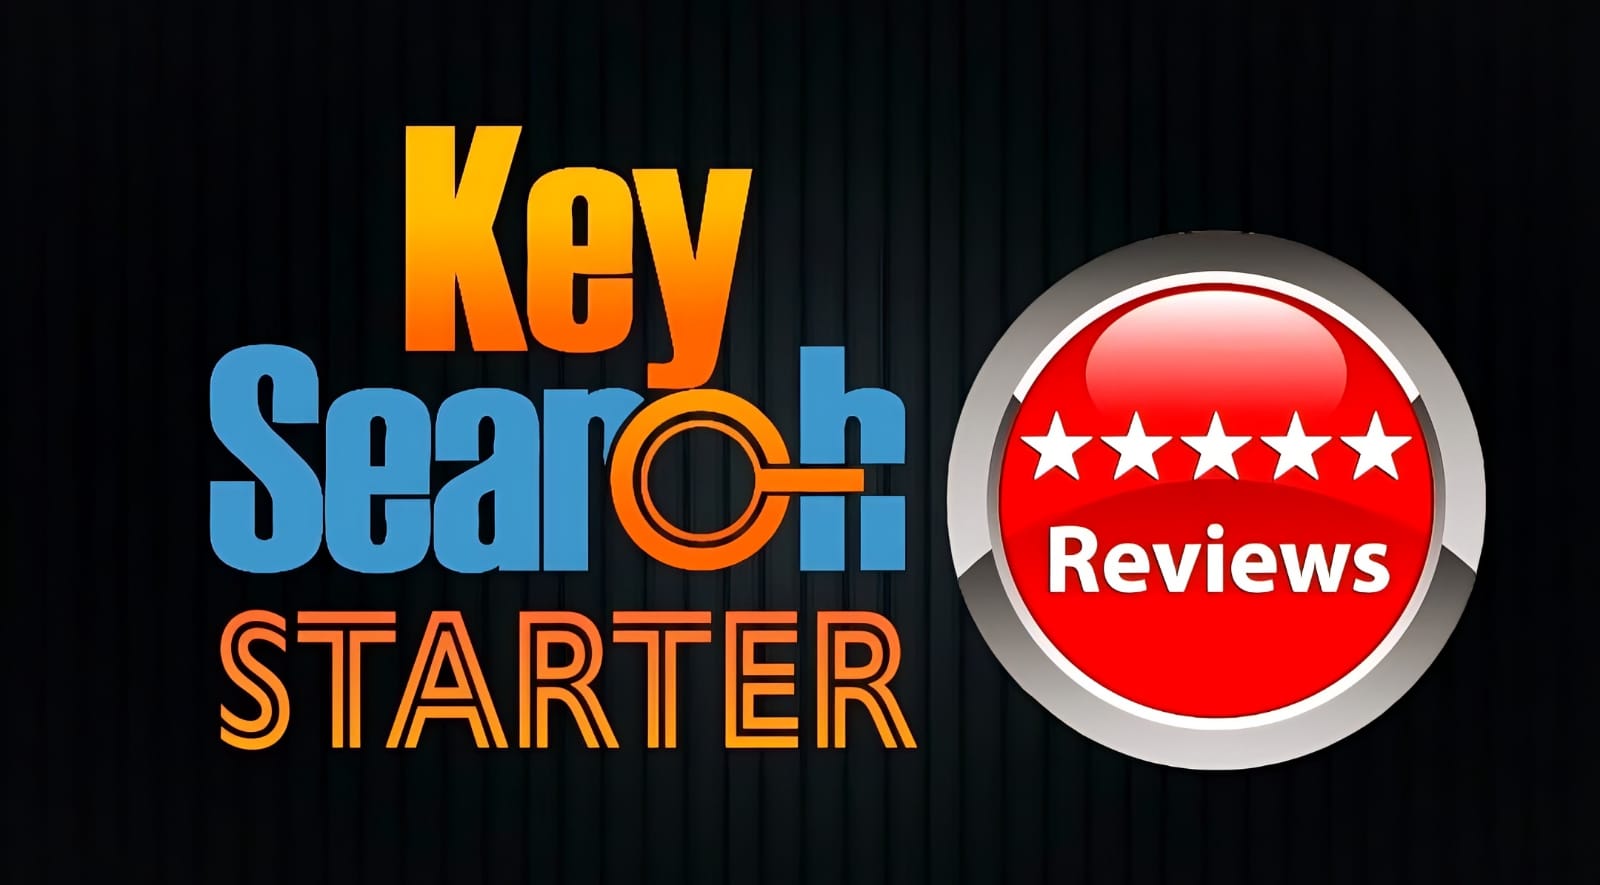 Keysearch Review